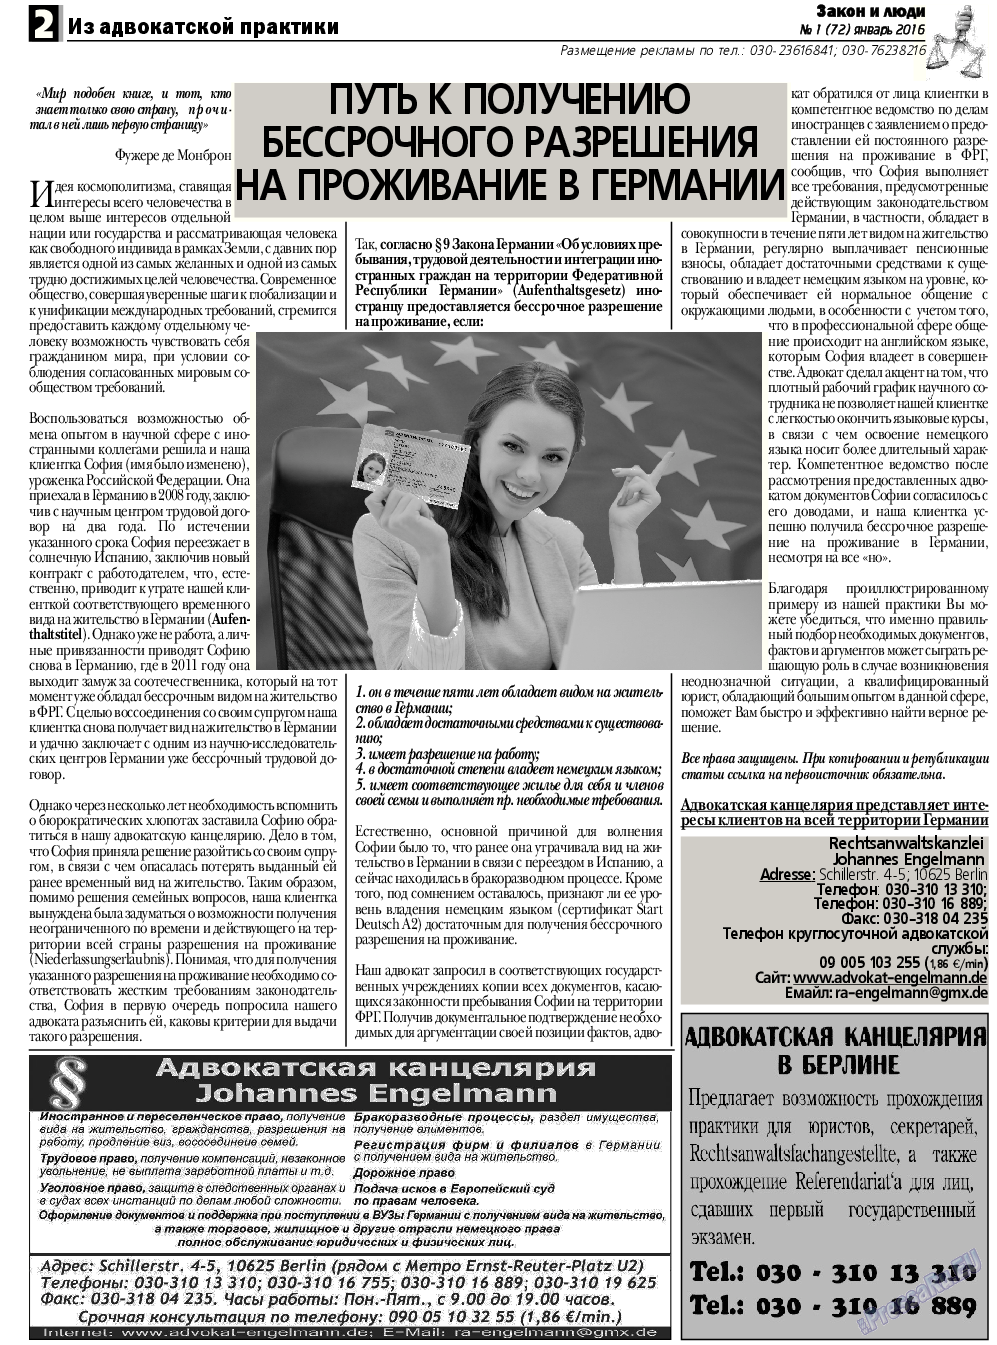 Закон и люди, газета. 2016 №1 стр.2